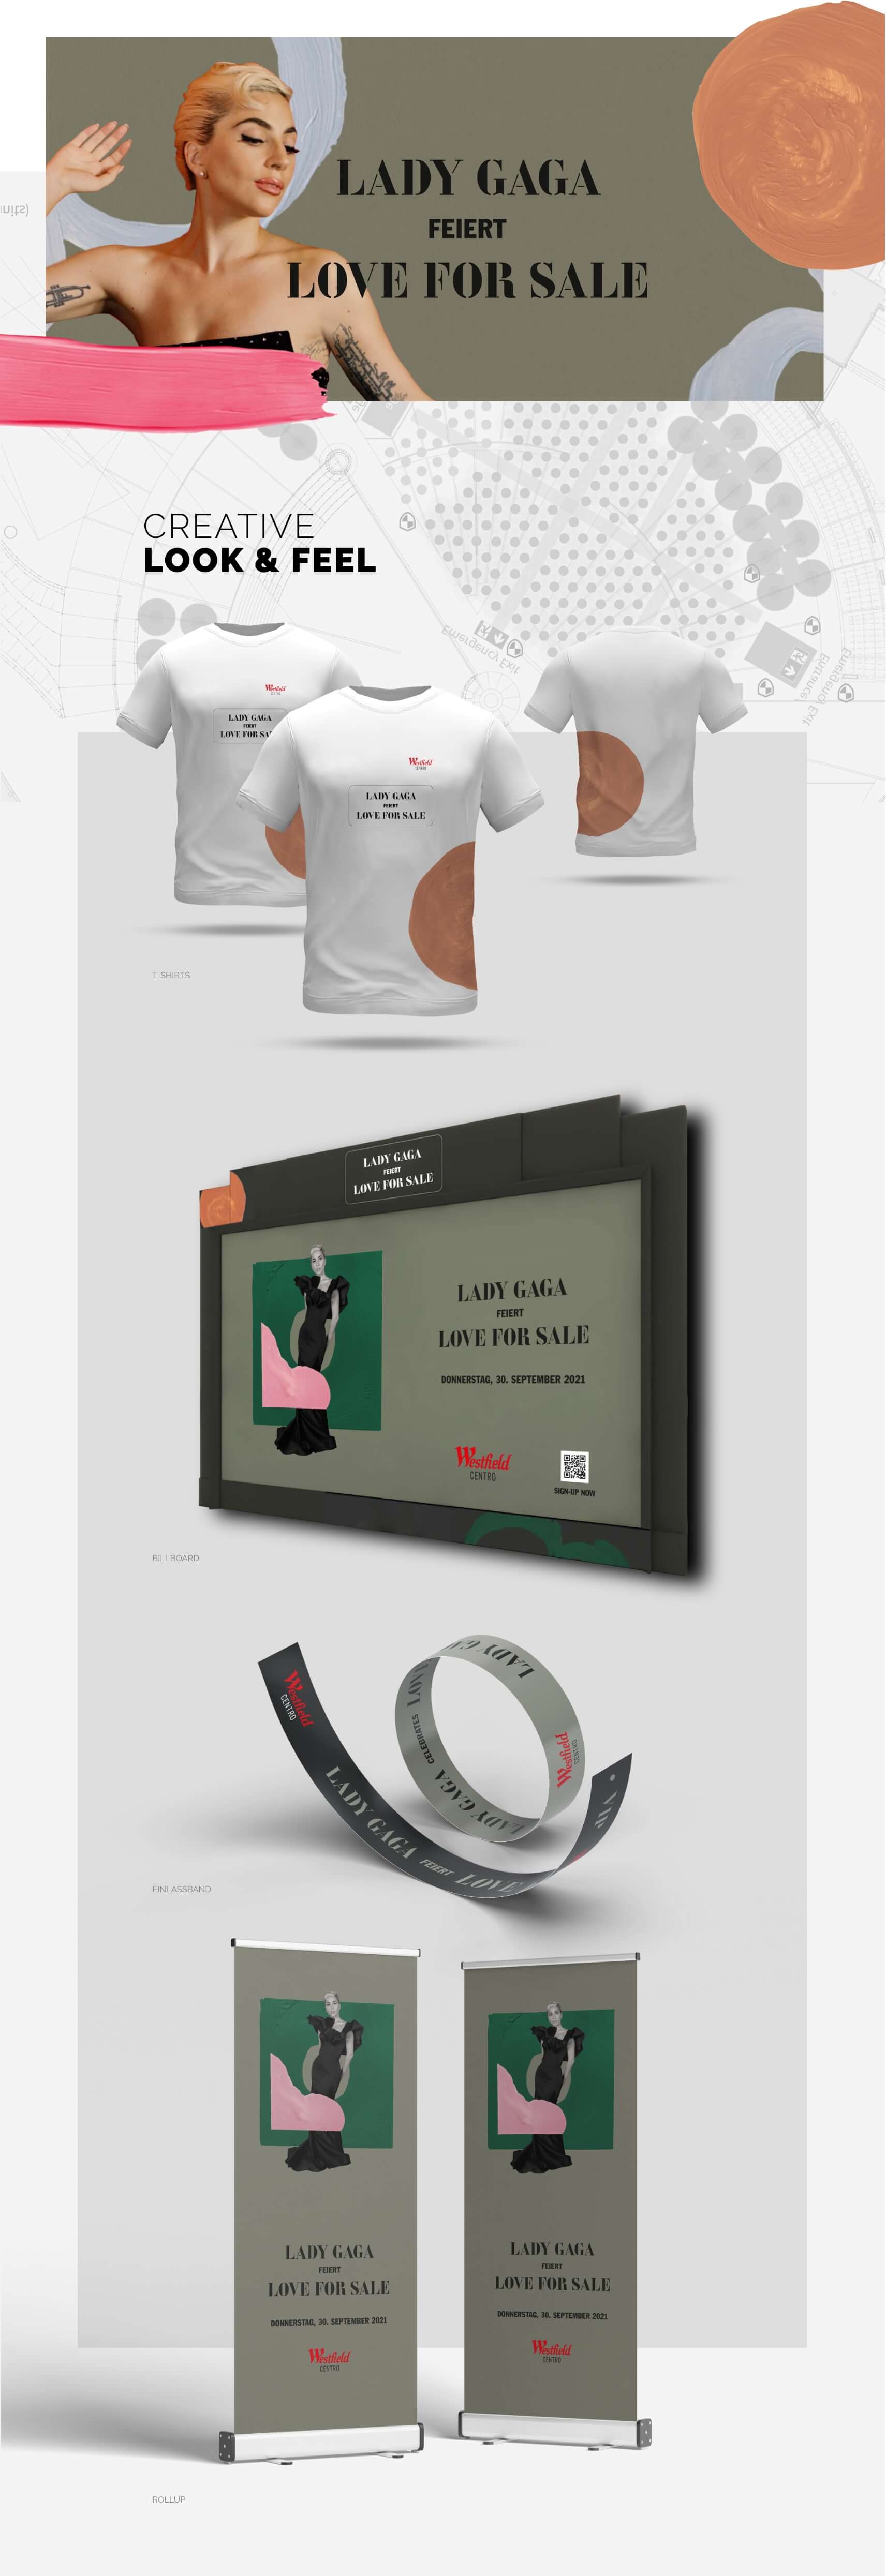 Lady Gaga Products Design